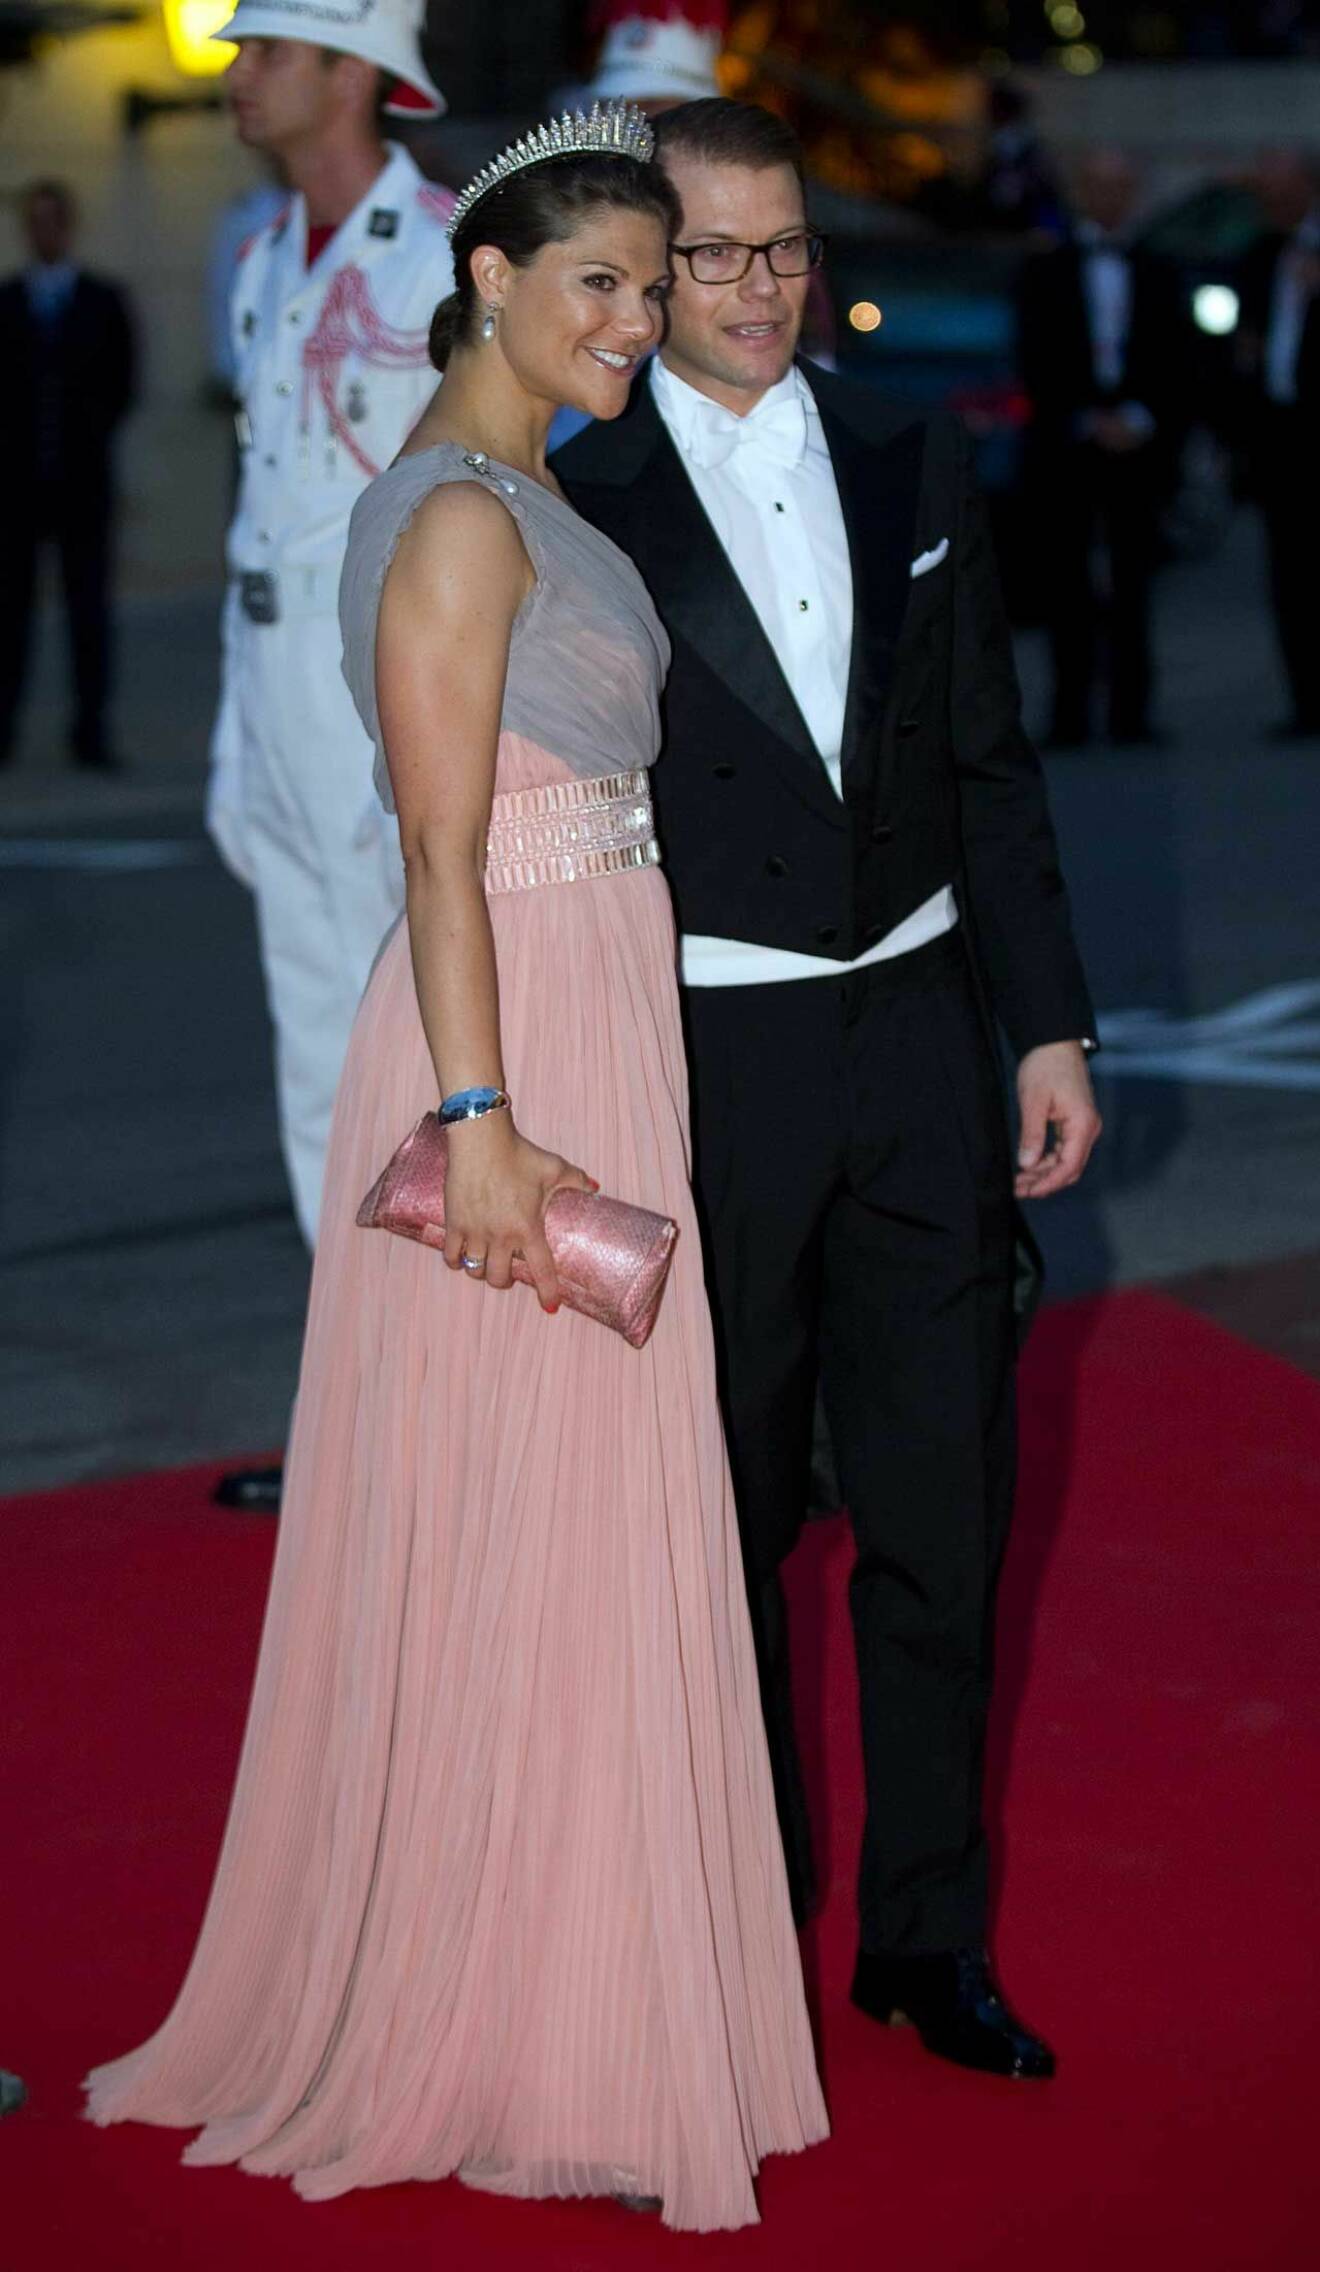 Victoria och Daniel. Väldigt vacker rosa klänning på kronprinsessan.